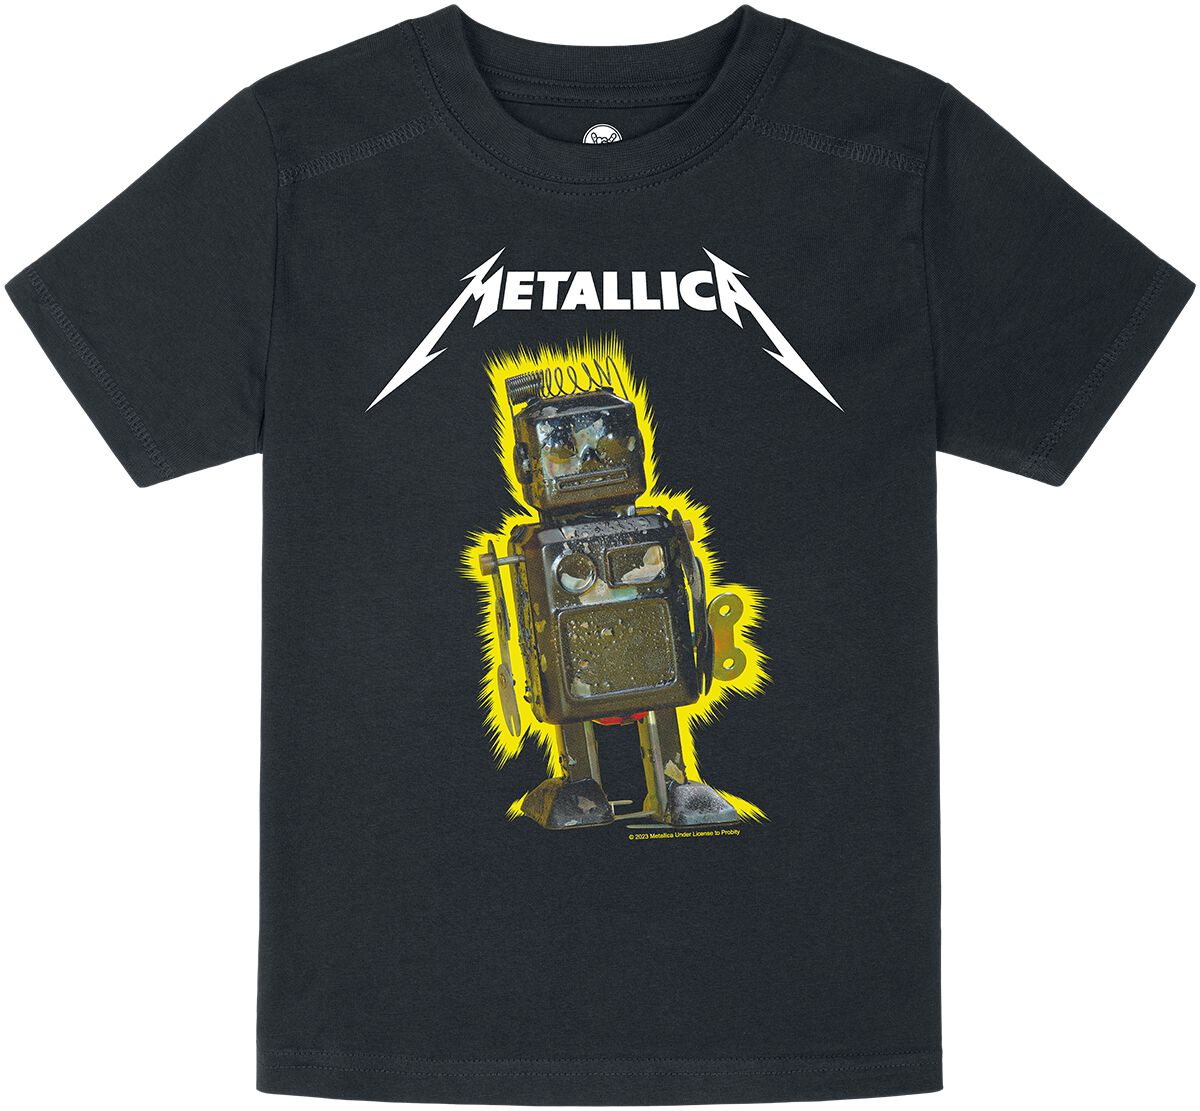 Metallica T-Shirt für Kinder - Metal-Kids - Robot Blast - für Mädchen & Jungen - schwarz  - Lizenziertes Merchandise!